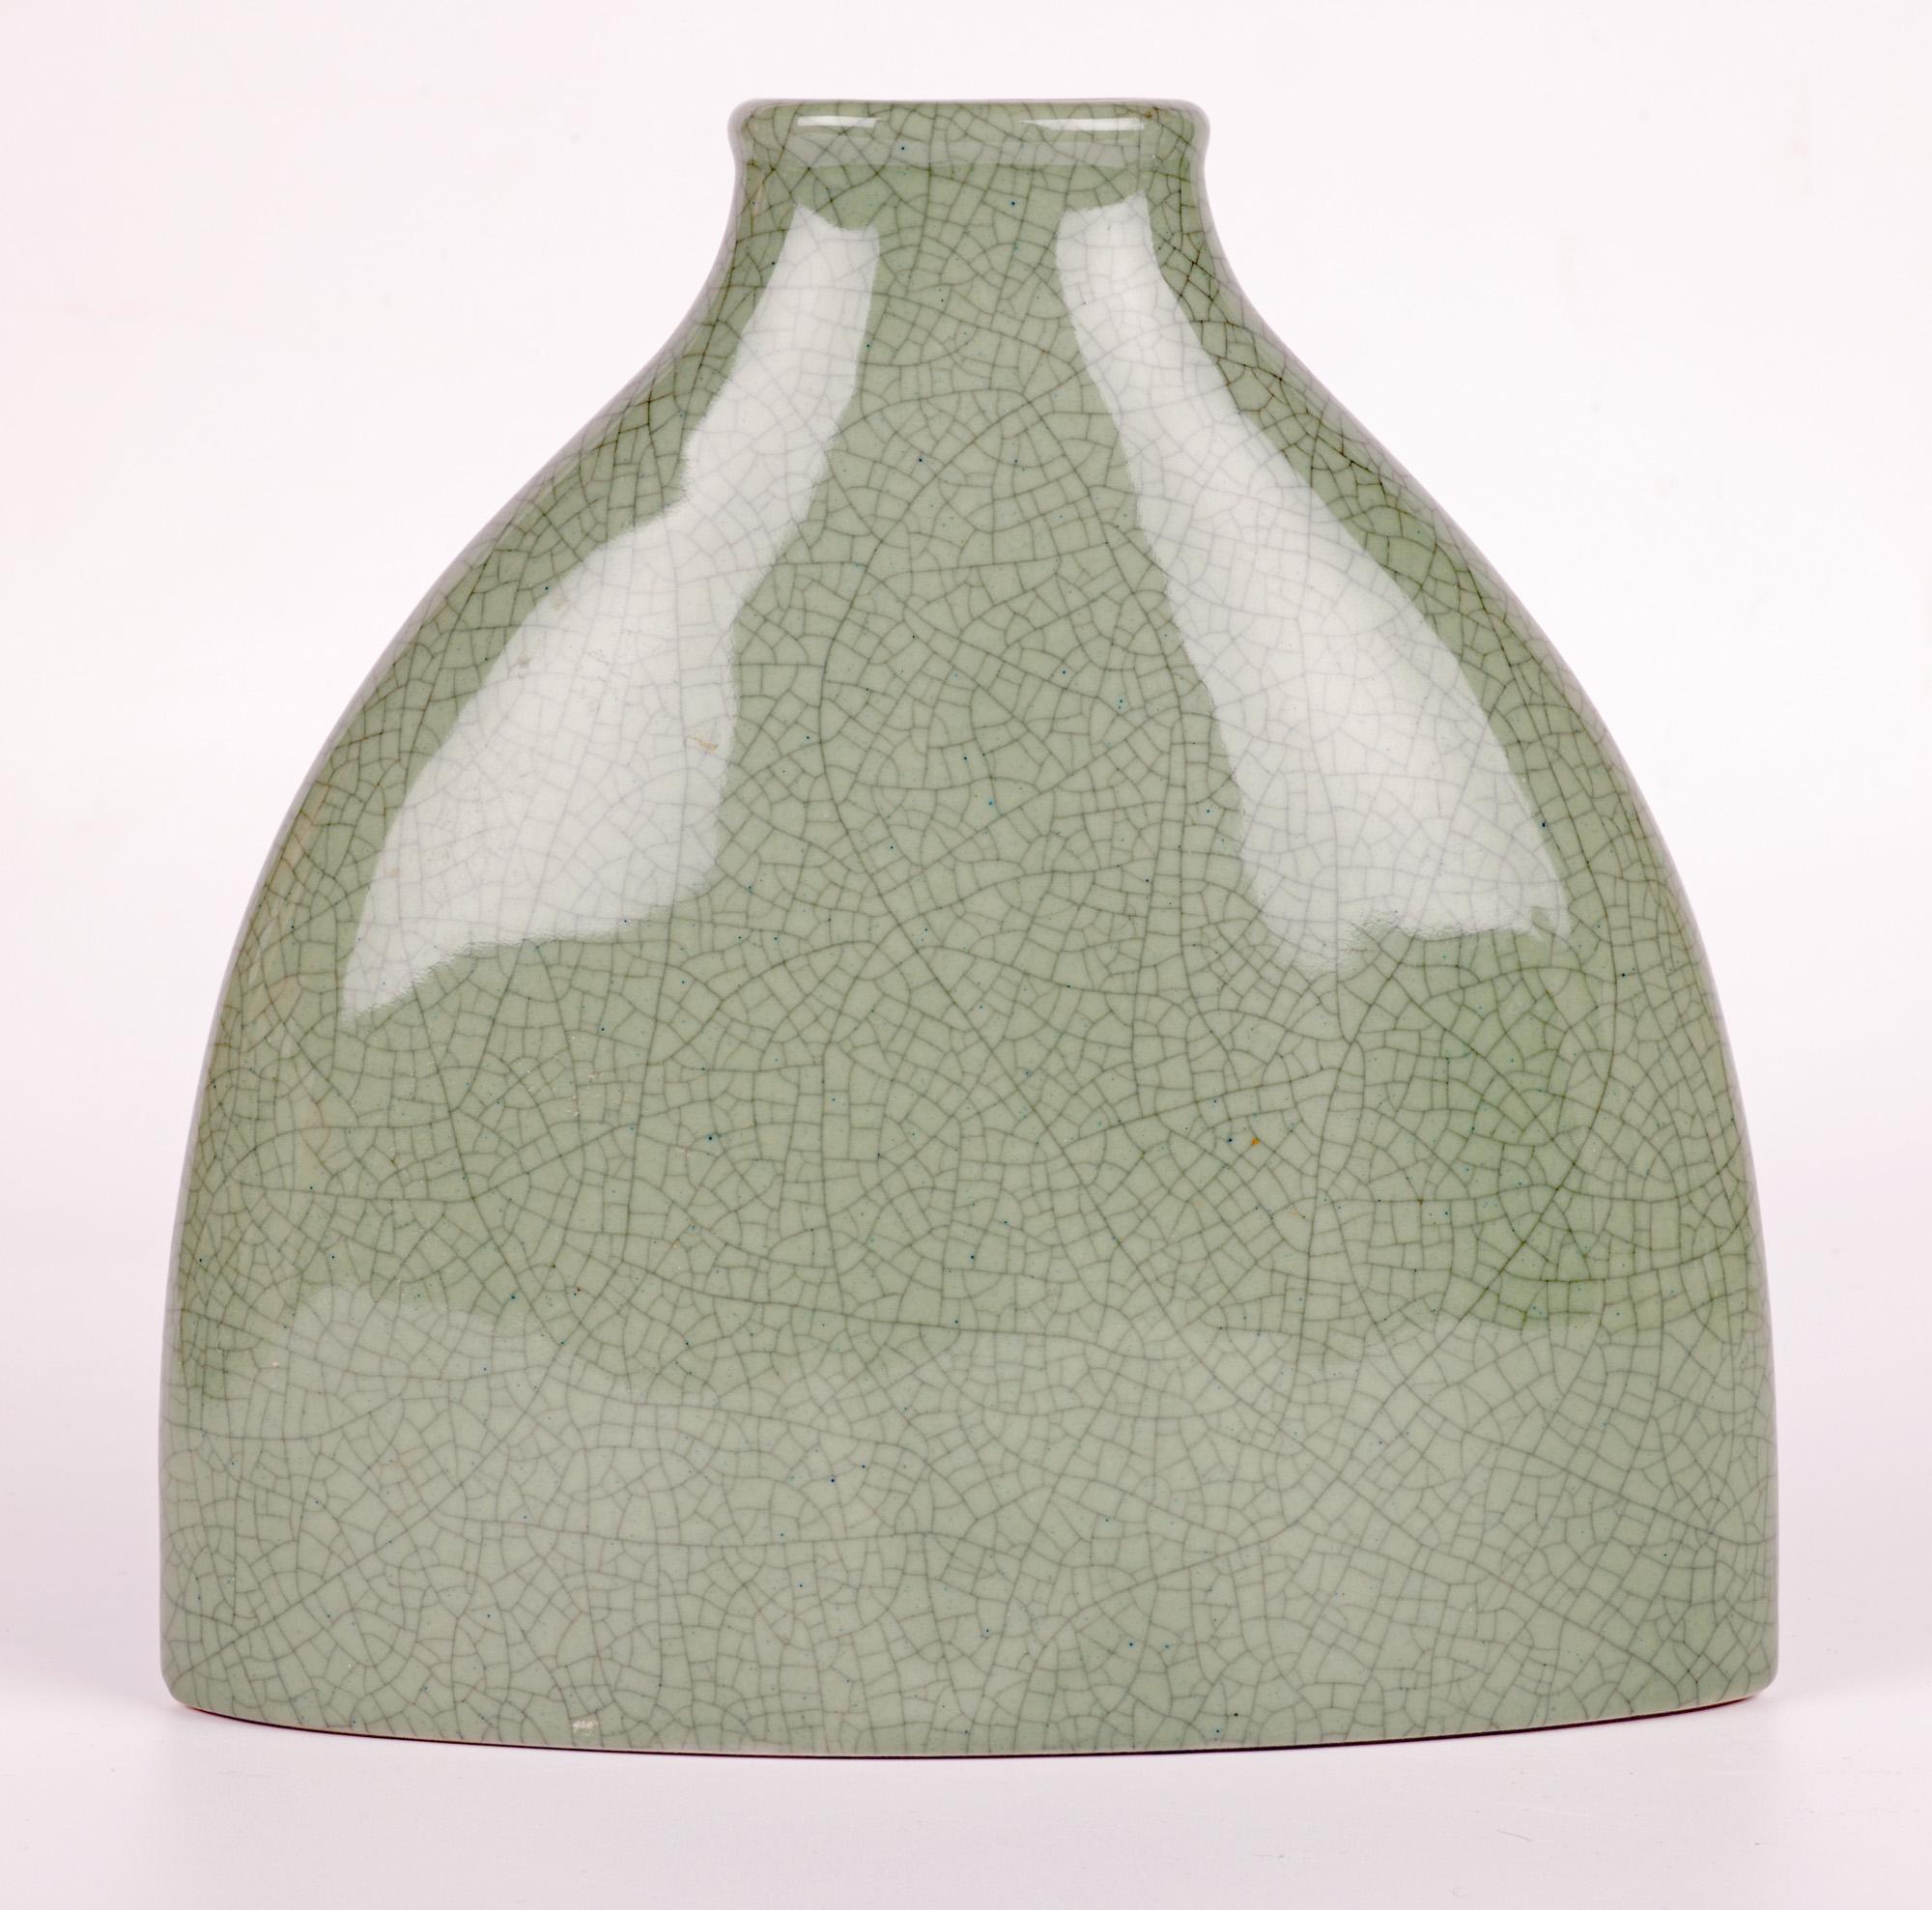 South East Asian Porcelain Celadon Glazed Craquelure Bottle Vase In Good Condition For Sale In Bishop's Stortford, Hertfordshire